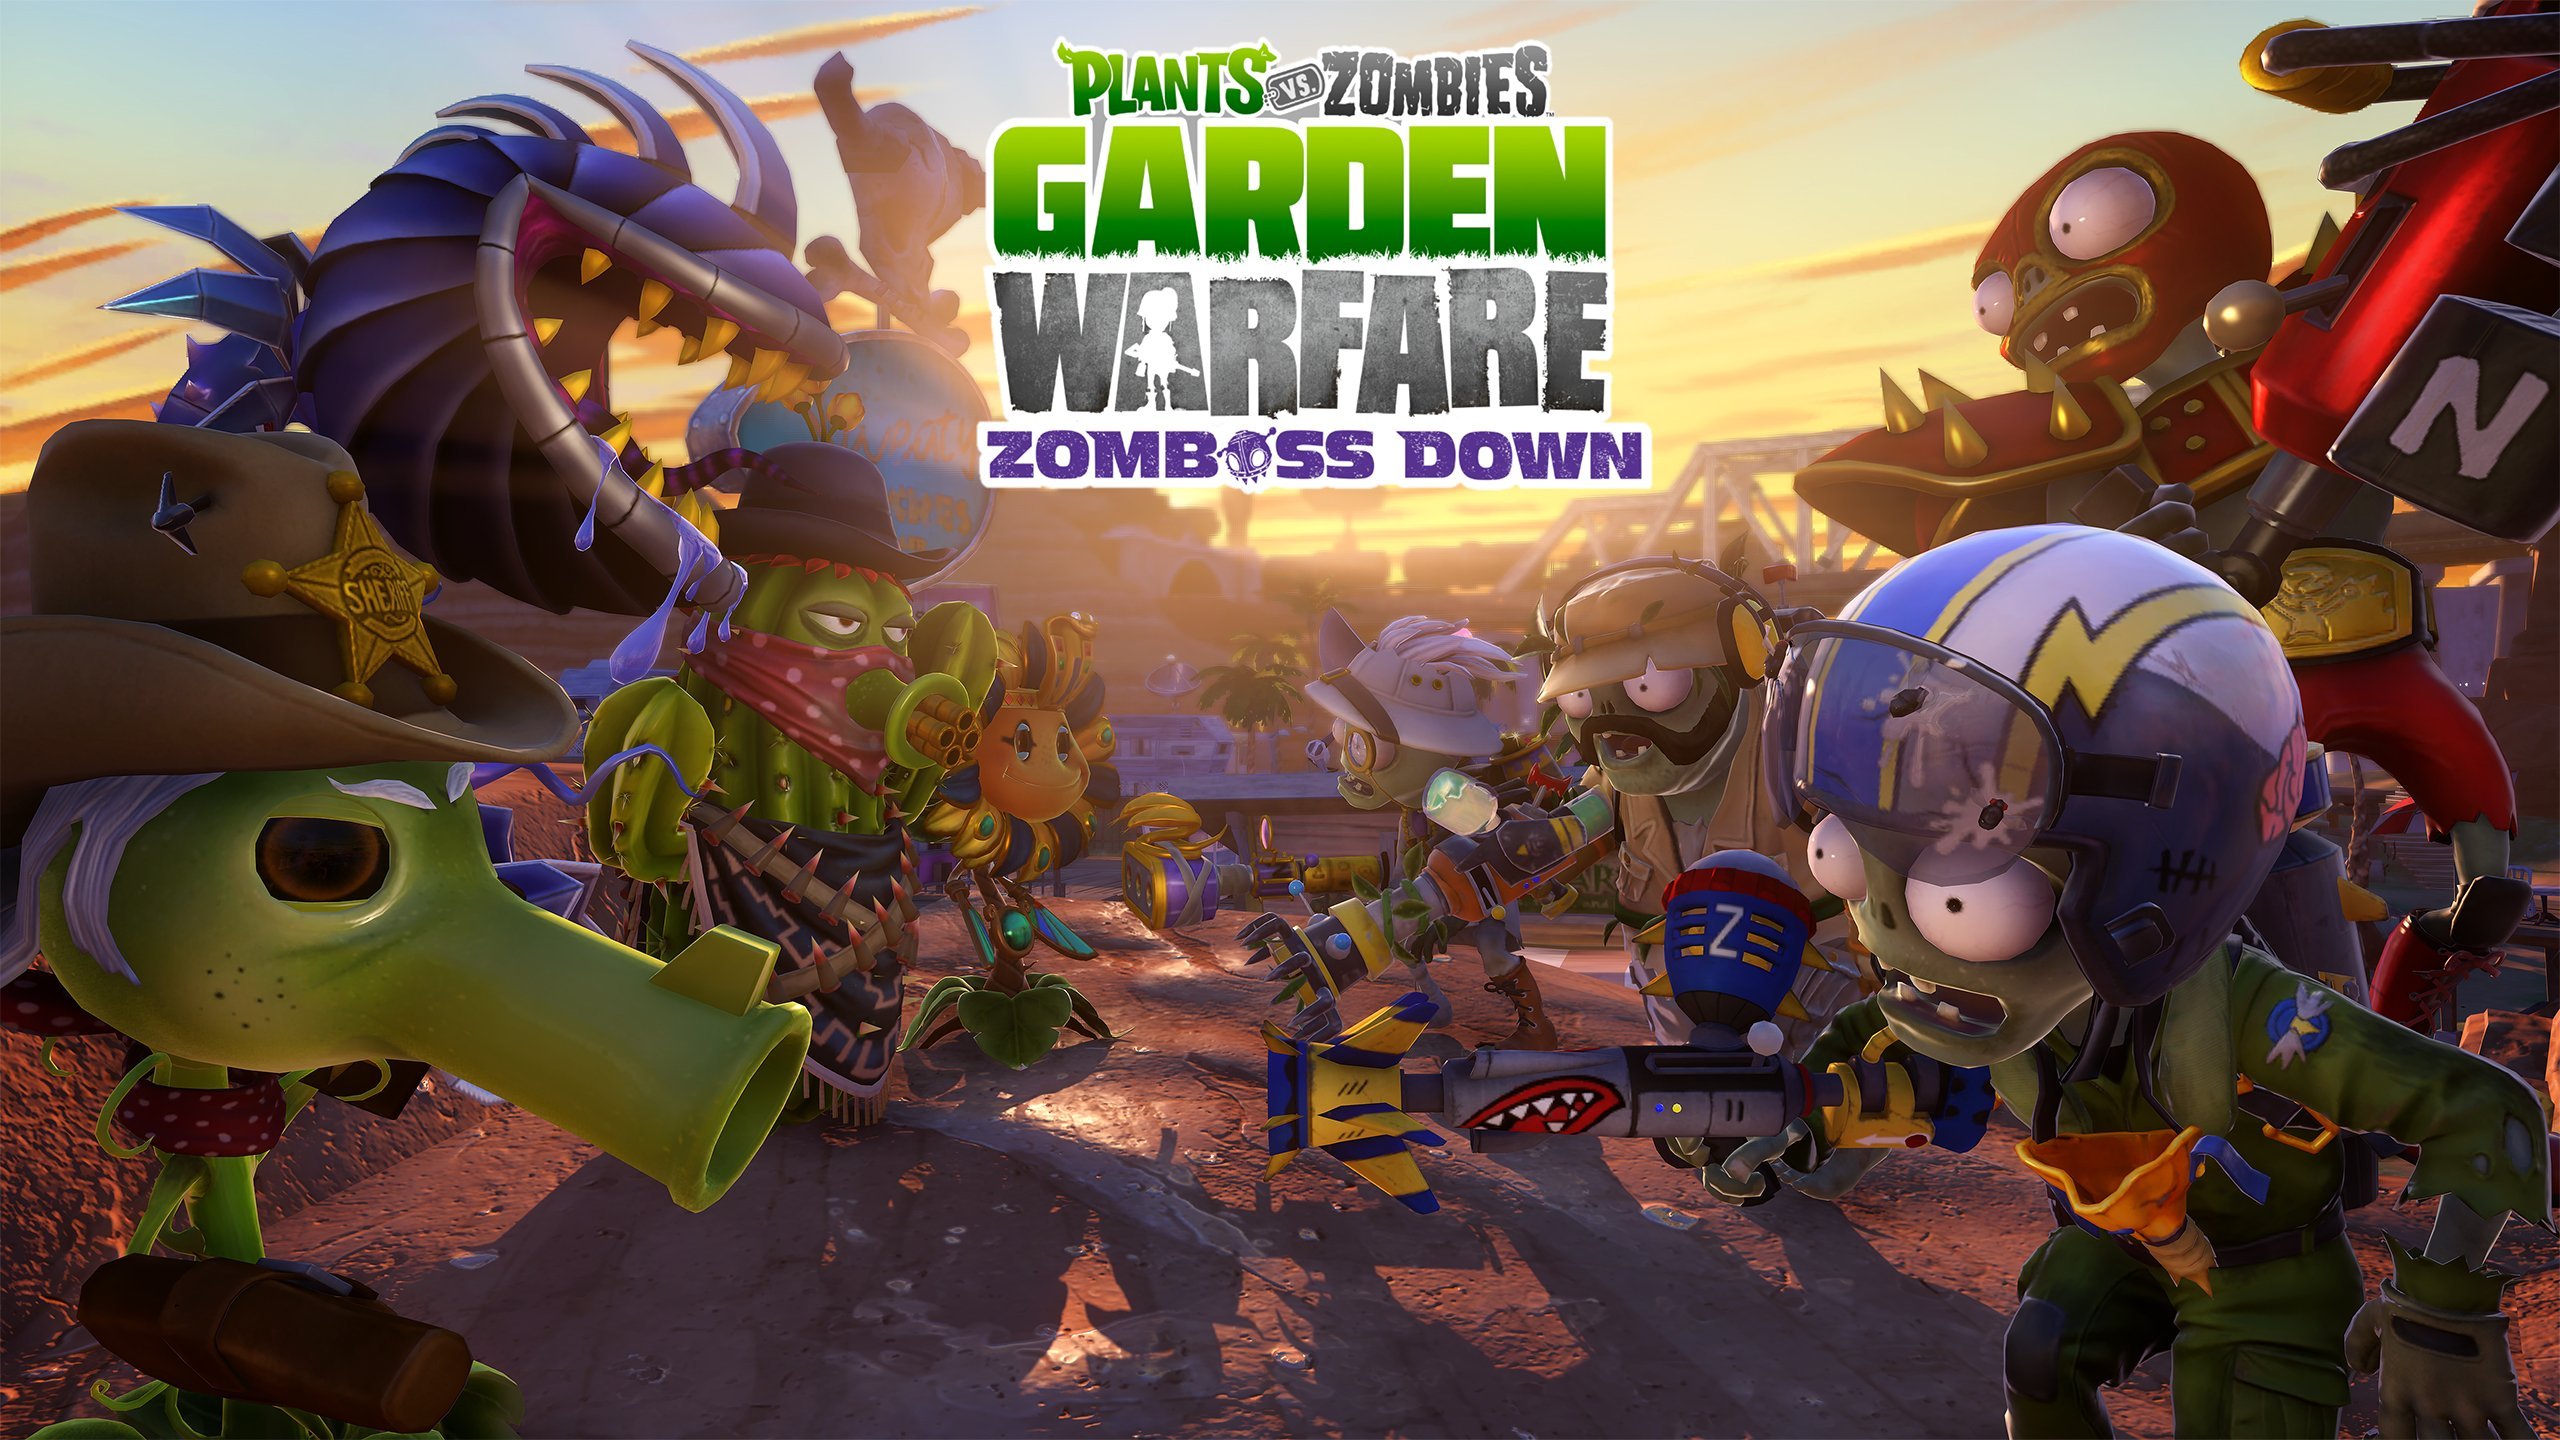 Will plants vs zombies garden warfare be on steam фото 37